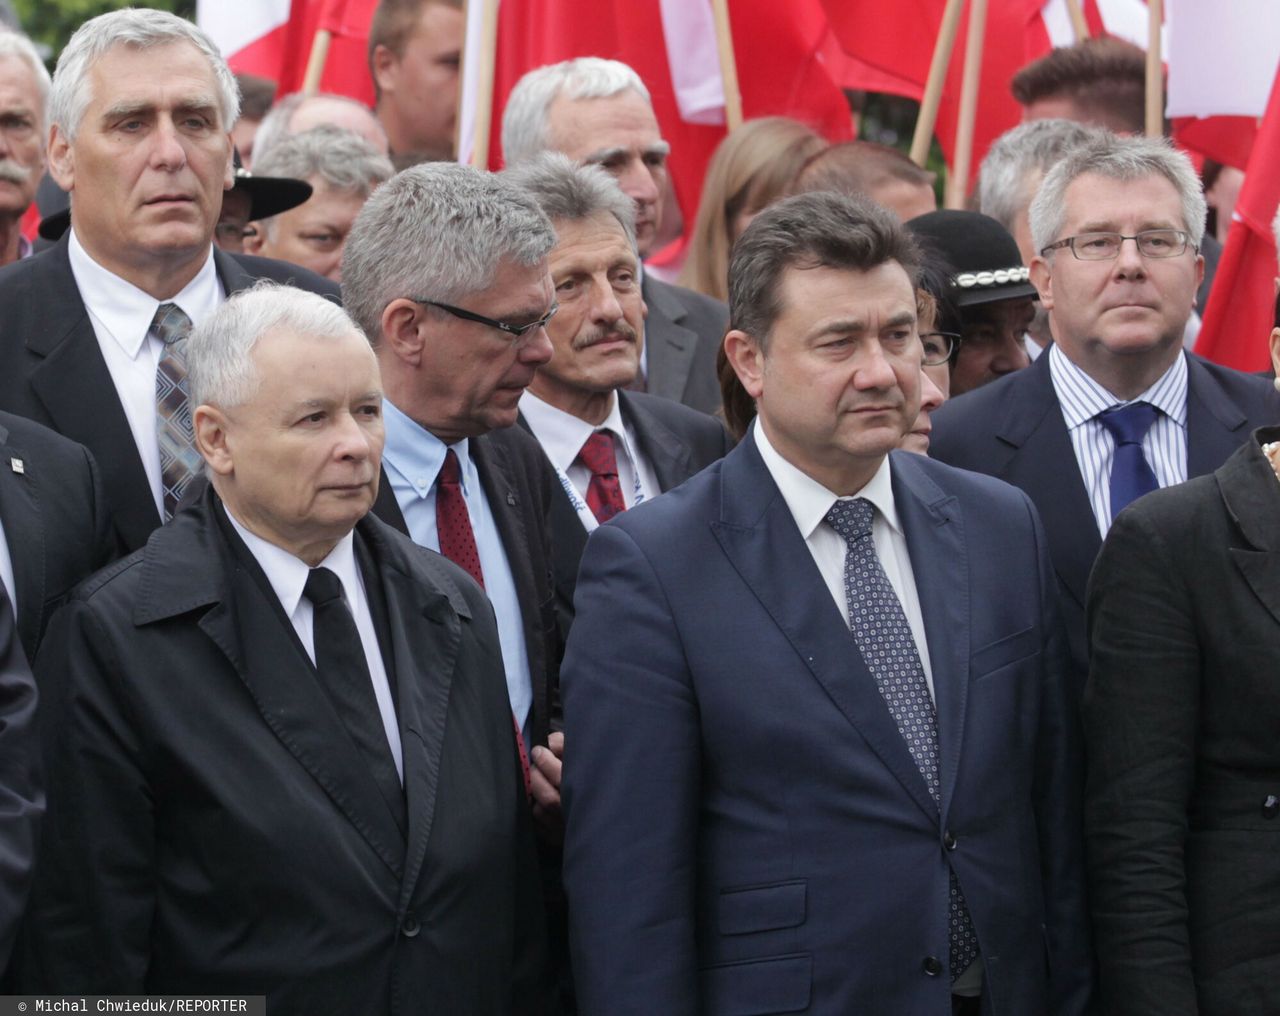 Wniosek o wyrzucenie Tobiszowskiego z PiS podpisany. Kaczyński nie ma skrupułów